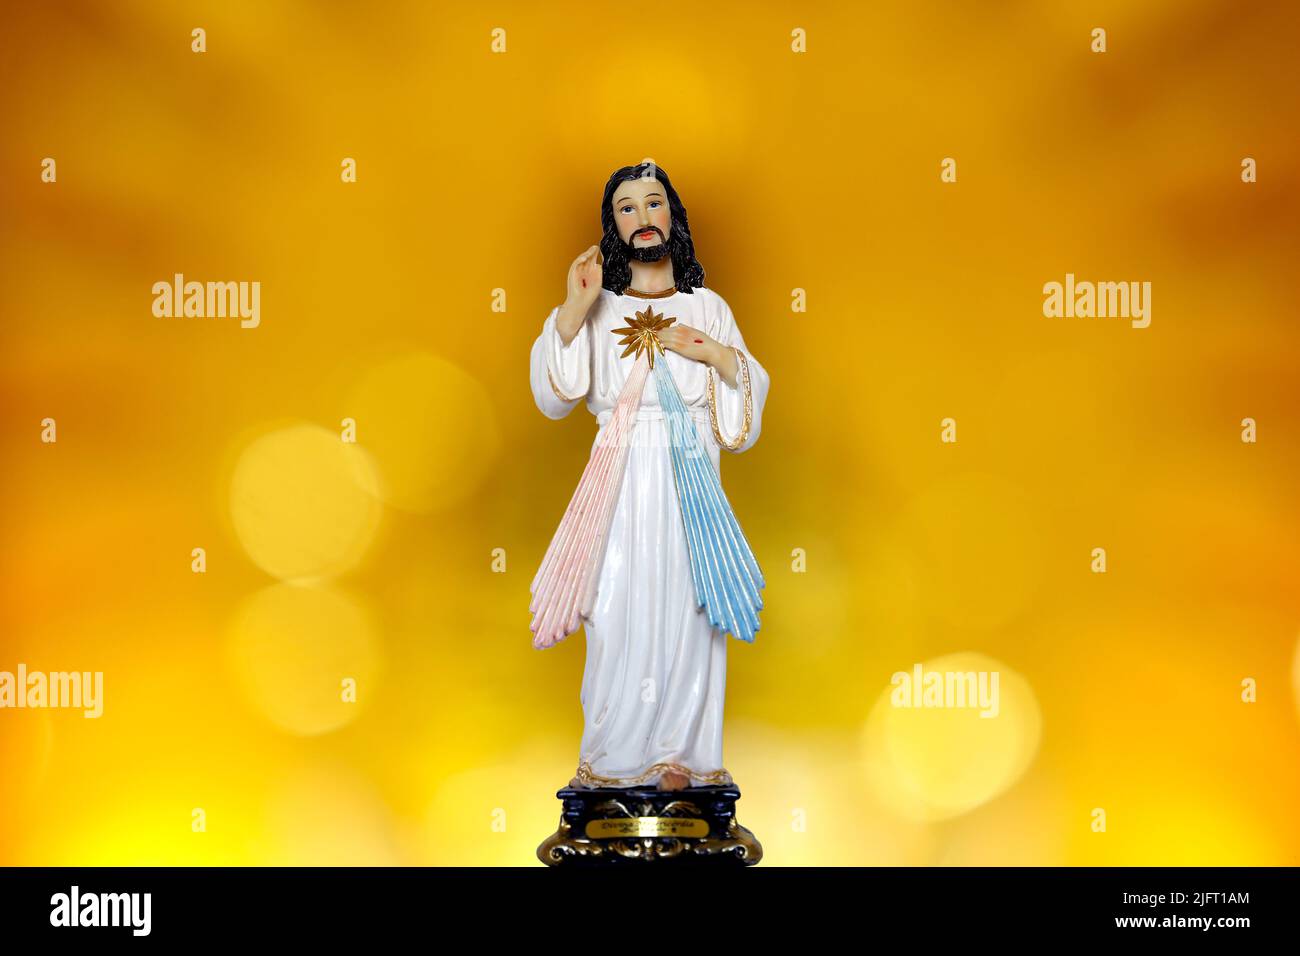 Estatua que representa al misericordioso Jesucristo, misericordia divina - símbolo católico Foto de stock